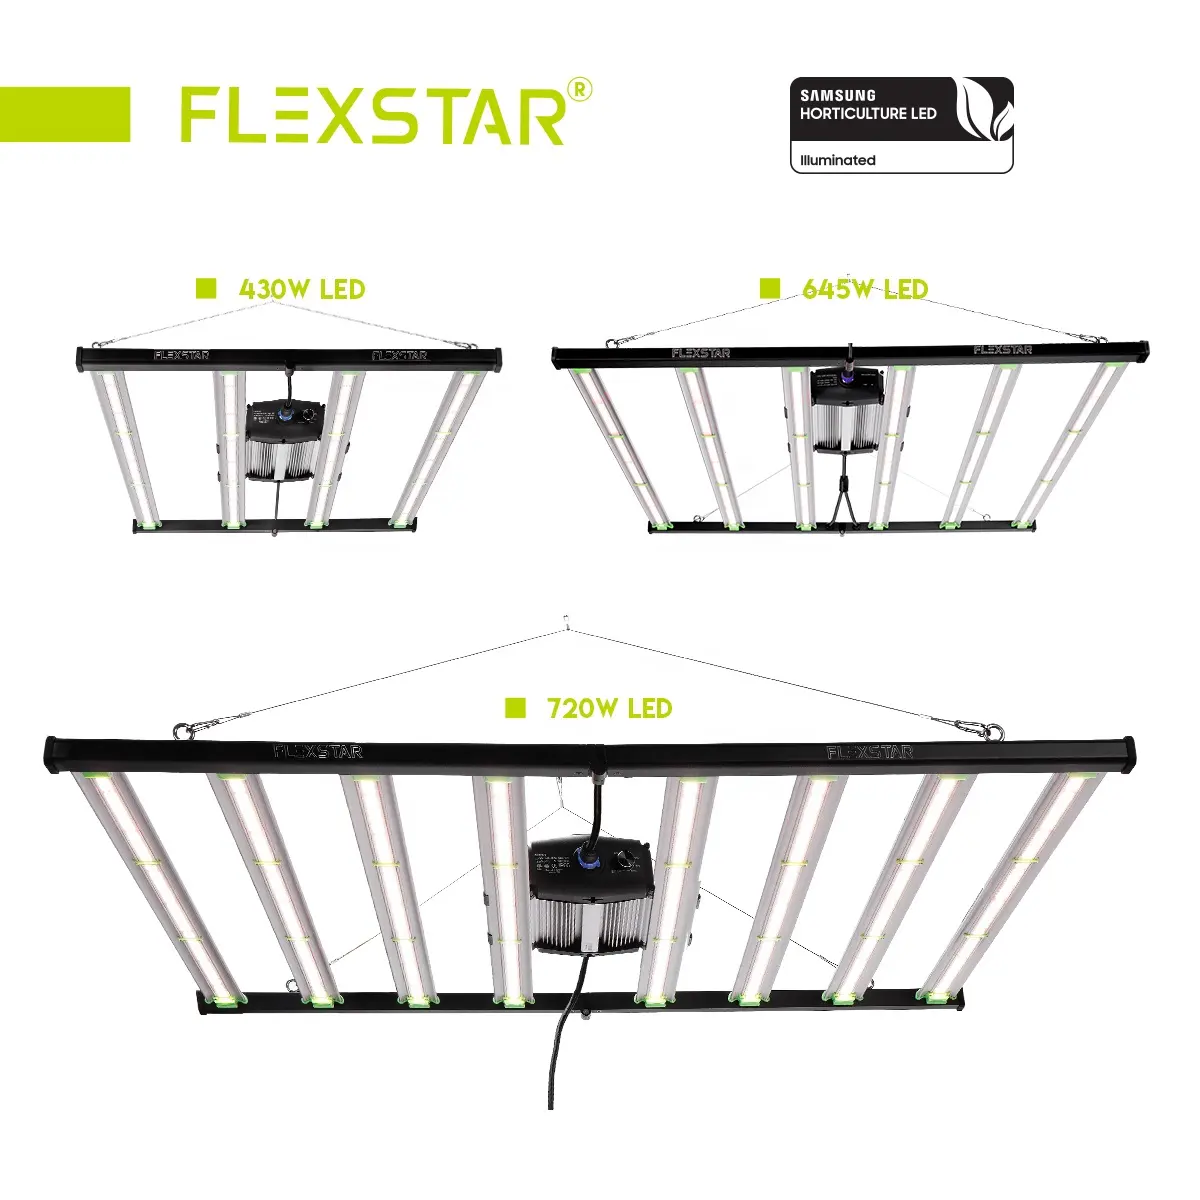 Однодневная доставка Flexstar Pro выпускает до 4 фунтов 301h 301b 2,8 umol/J эффективность выше, чем светодиодная промышленная лампа 1700e